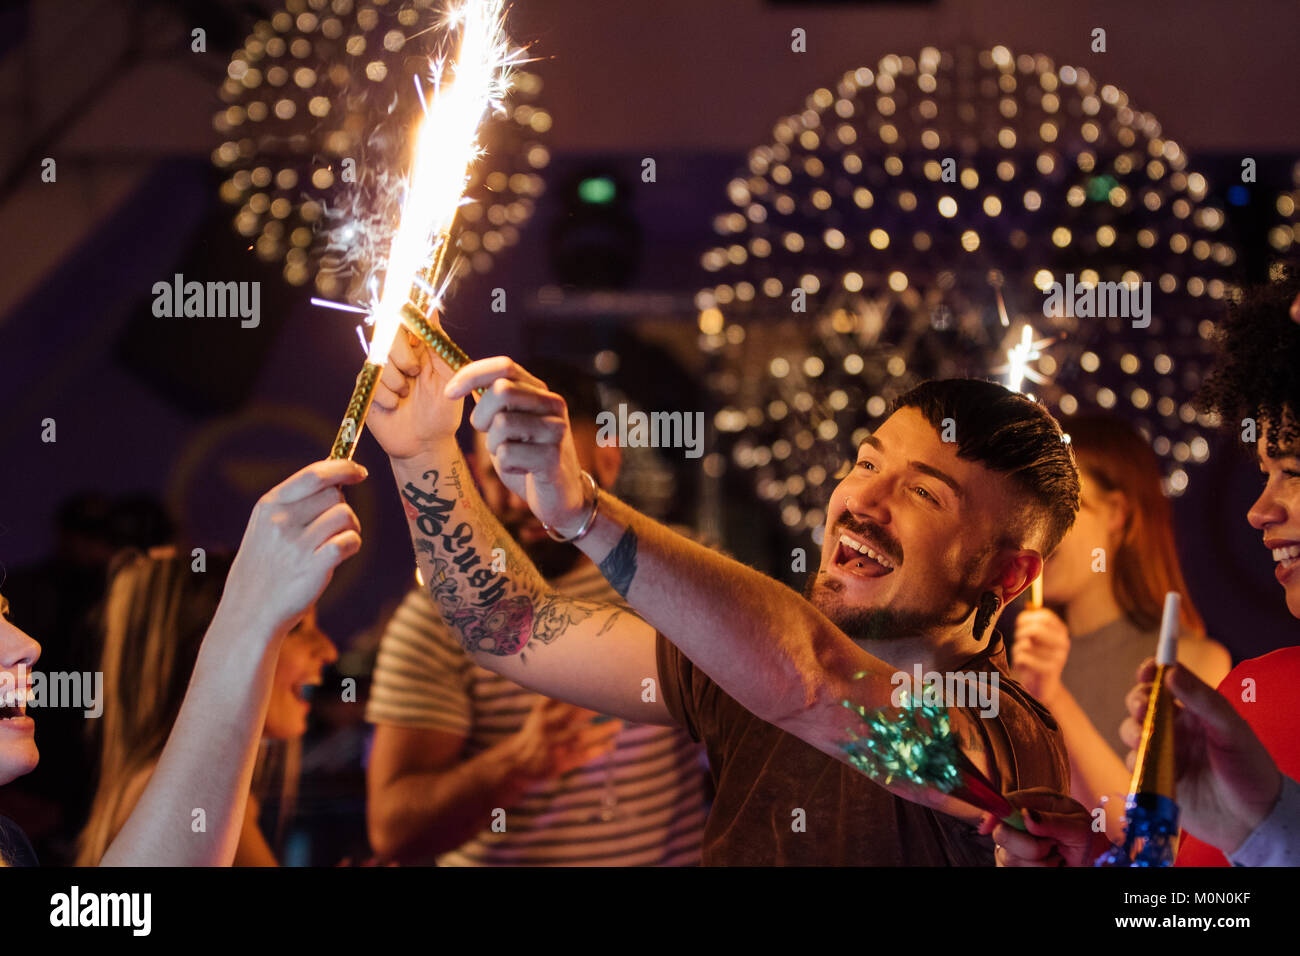 Freunde feiern gemeinsam in einem Nachtclub. Sie sind Beleuchtung innen Wunderkerzen beim Tanzen. Stockfoto